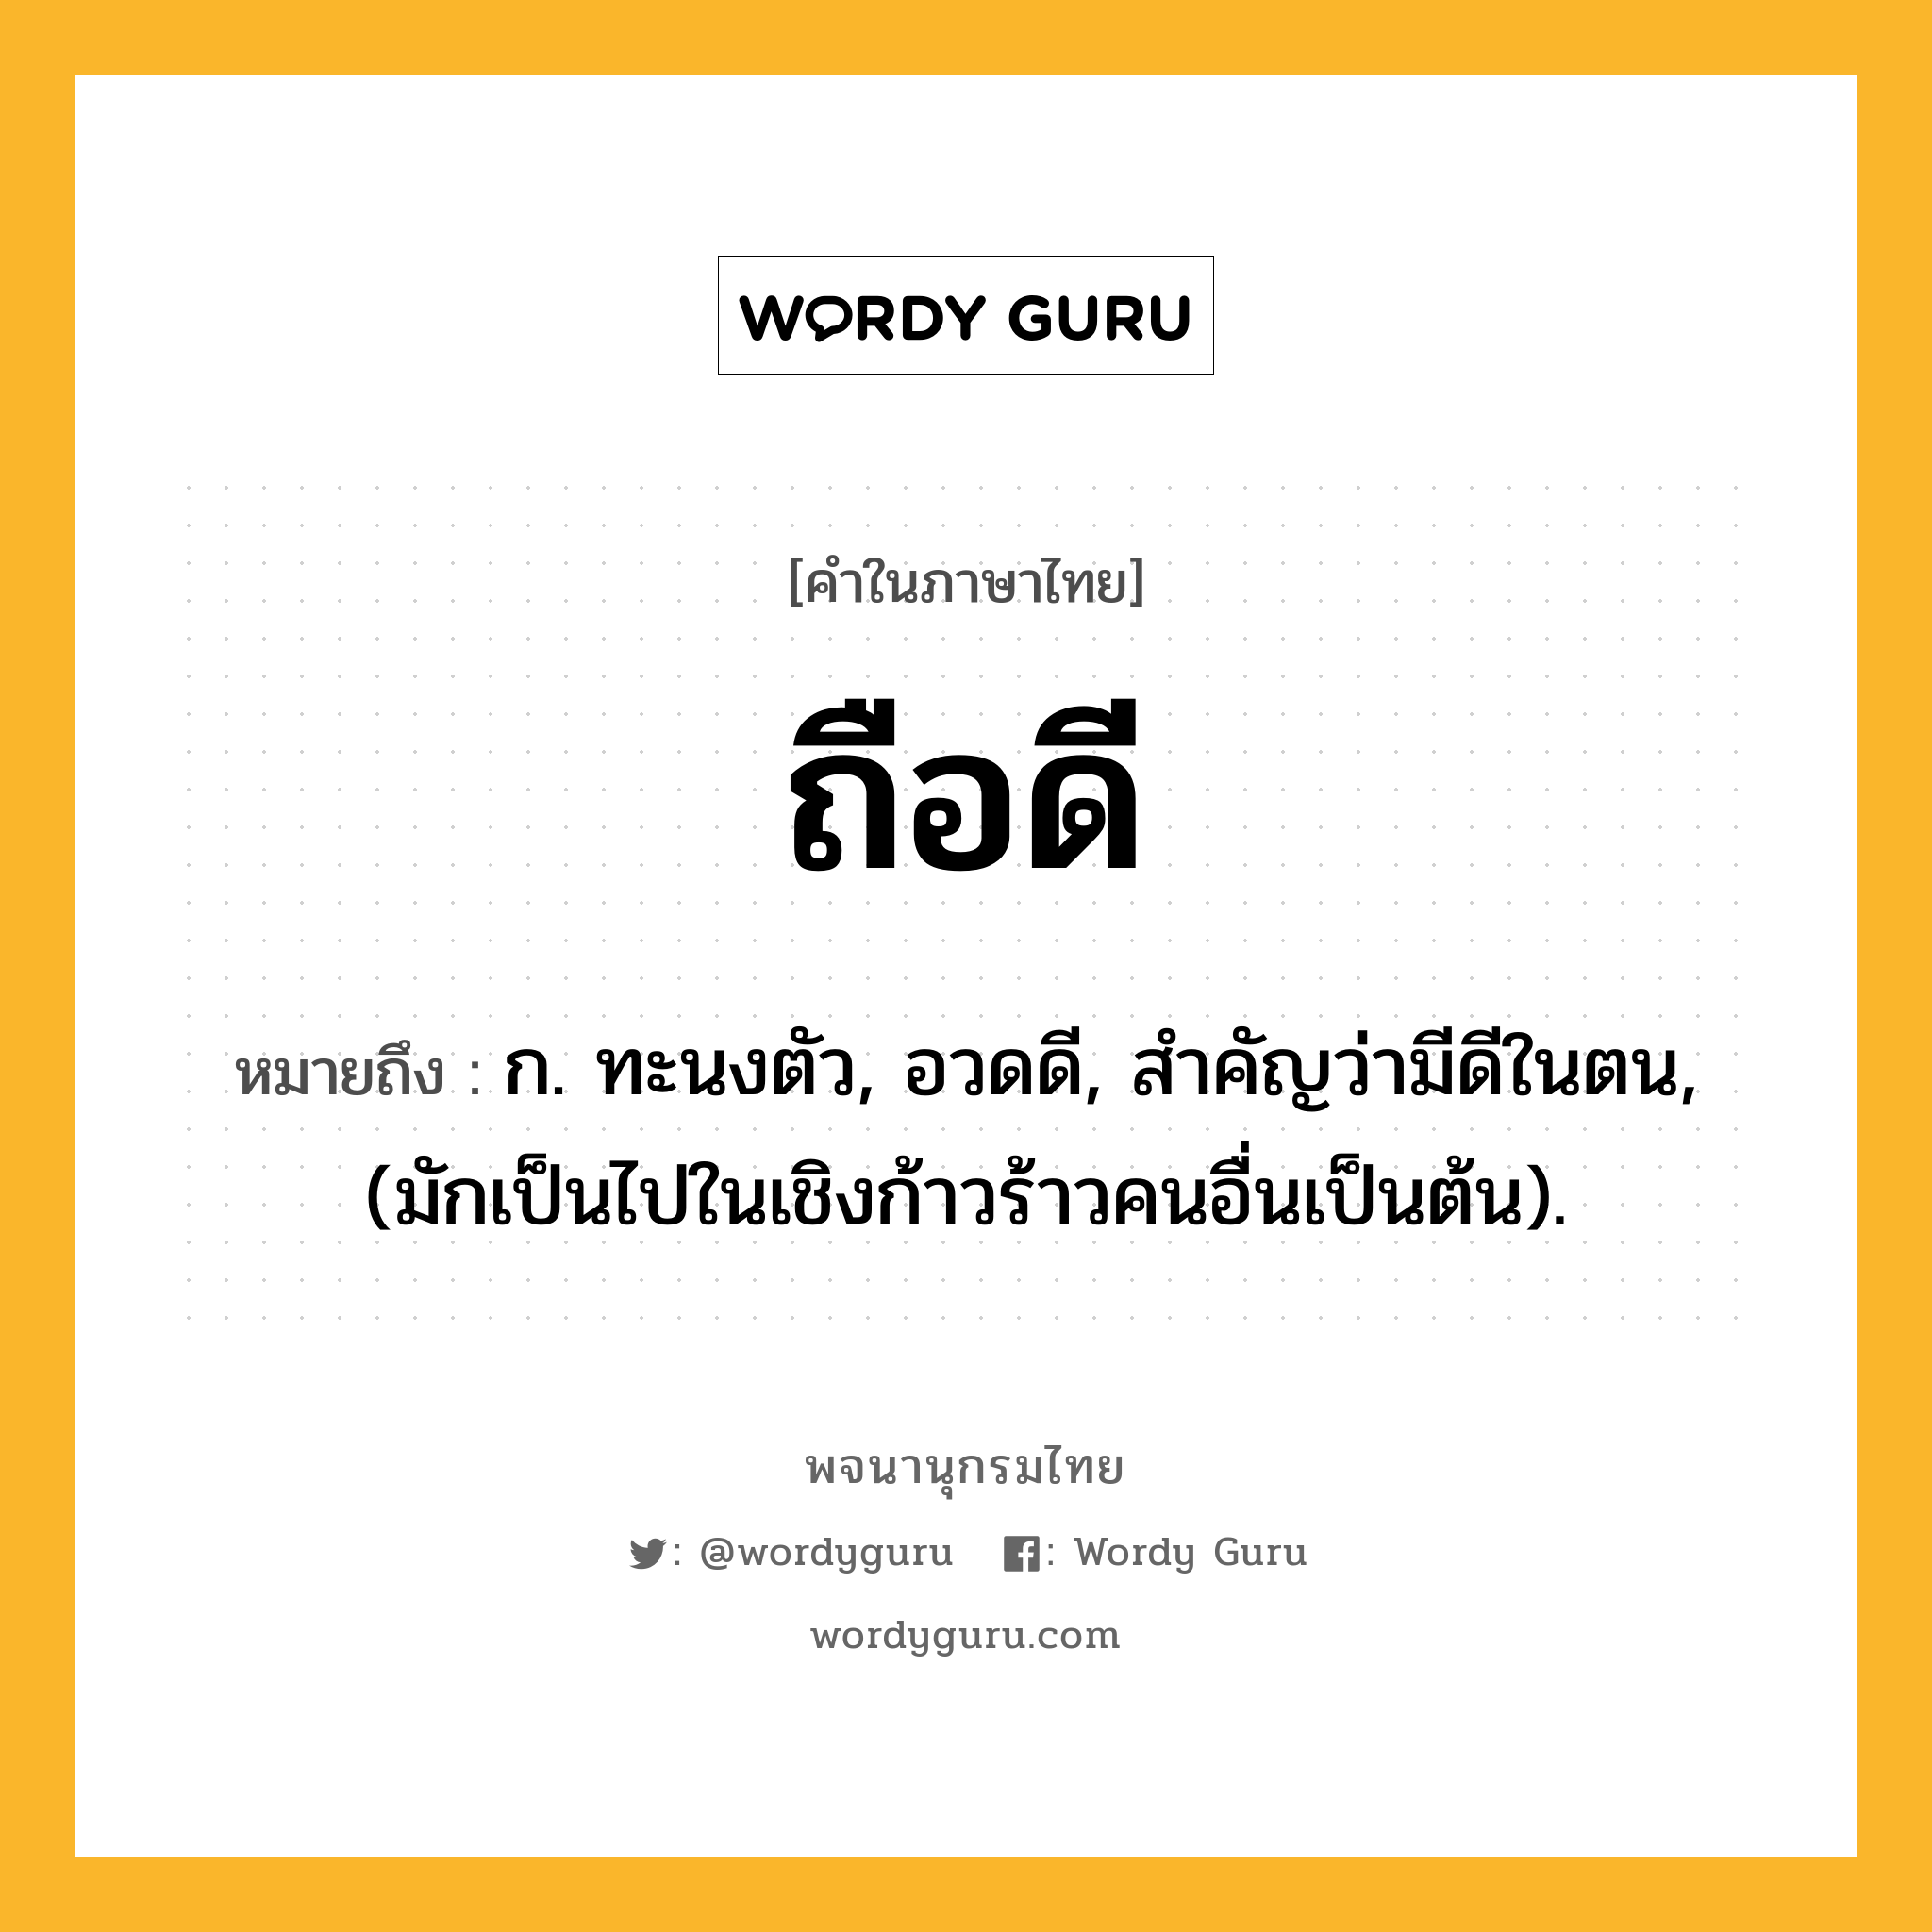 ถือดี ความหมาย หมายถึงอะไร?, คำในภาษาไทย ถือดี หมายถึง ก. ทะนงตัว, อวดดี, สําคัญว่ามีดีในตน, (มักเป็นไปในเชิงก้าวร้าวคนอื่นเป็นต้น).